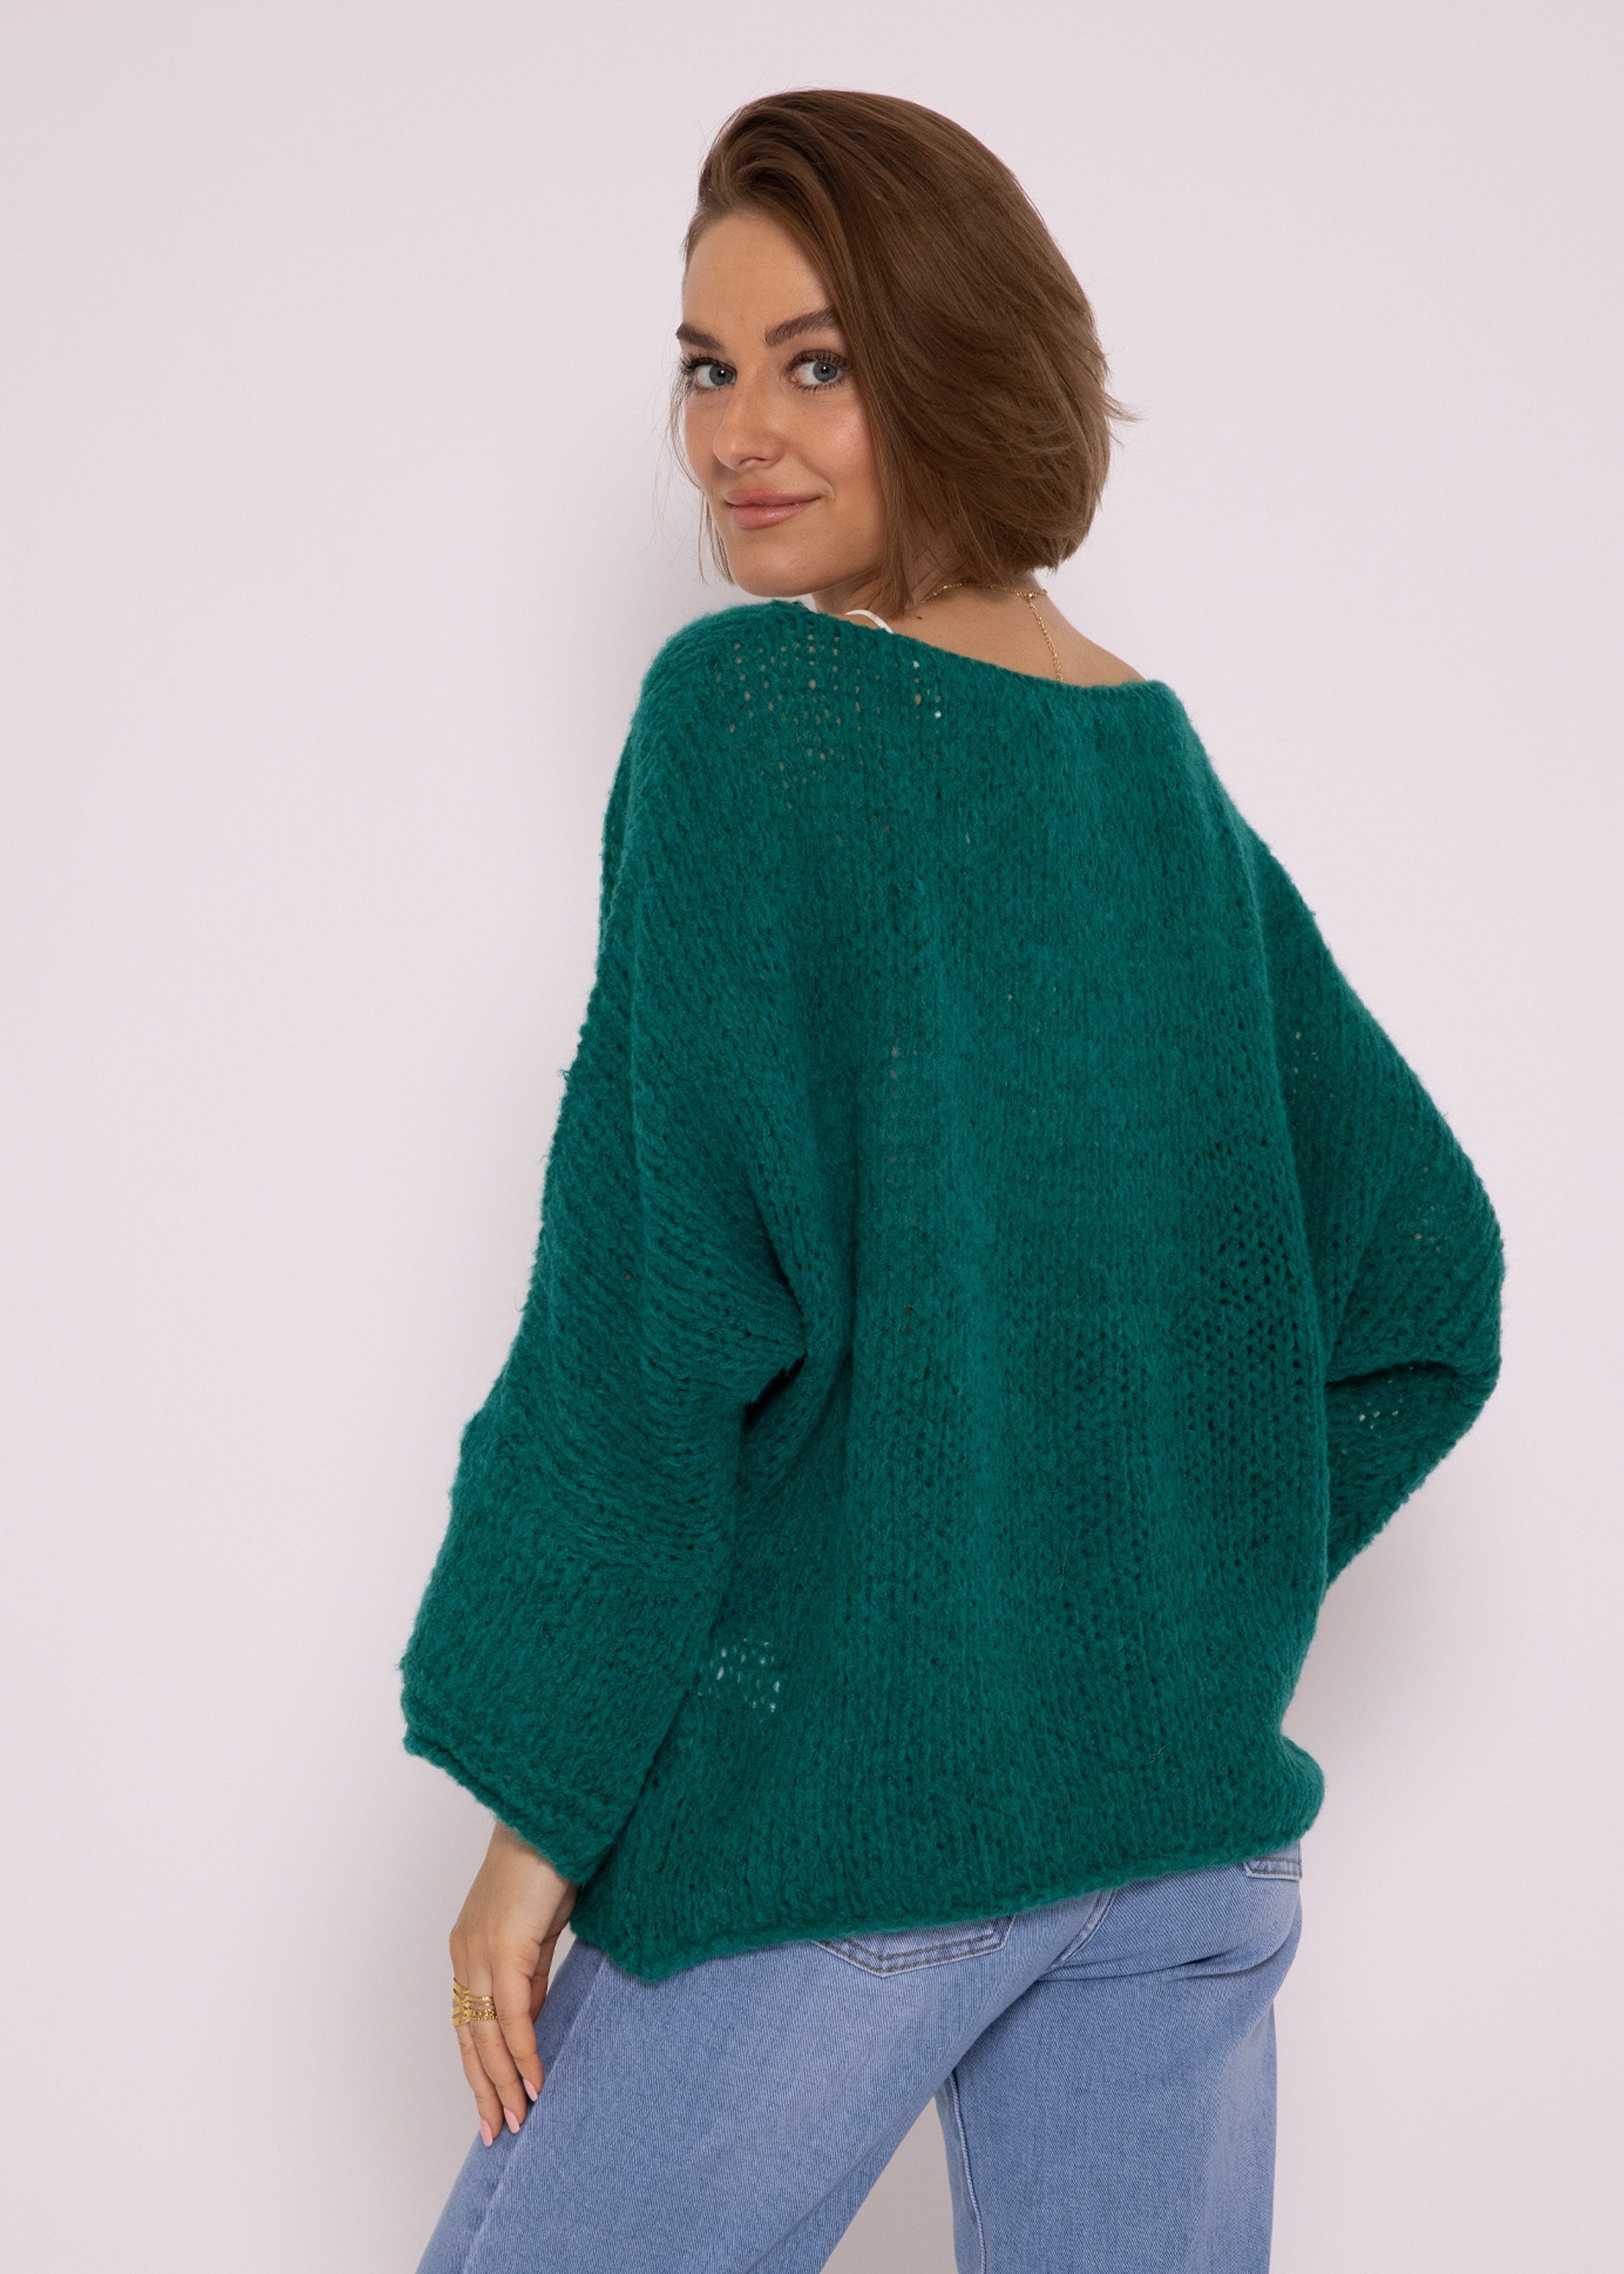 SASSYCLASSY Strickpullover Oversize Pullover aus Damen Italy weichem Strickpullover Lässiger in lang Rundhals-Ausschnitt, Grün Made Grobstrick mit